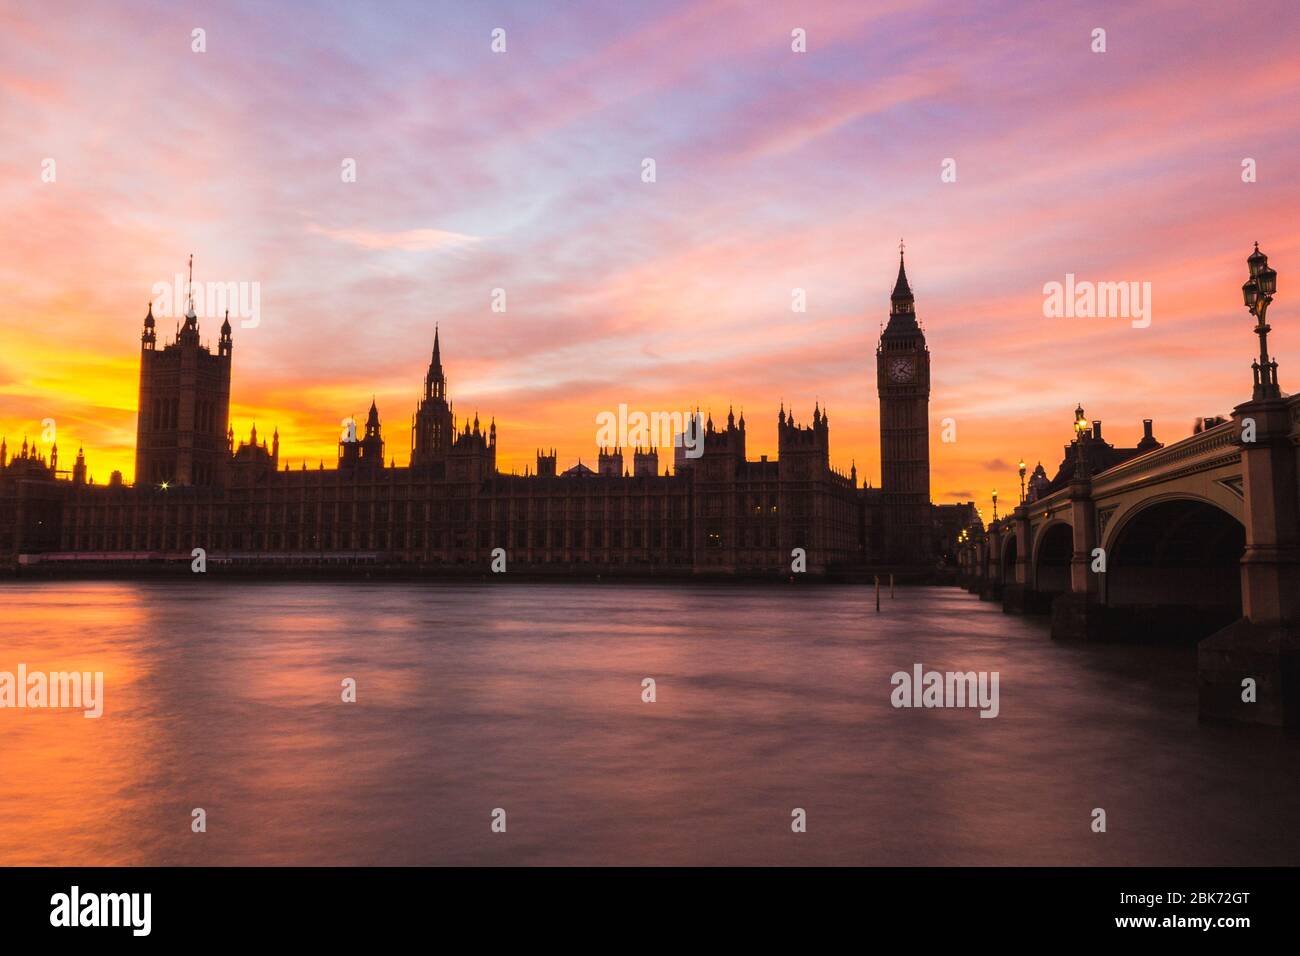 Westminster de Londres (Chambres du Parlement) avec un beau ciel panoramique au coucher du soleil. Le bâtiment peut être vu comme une silhouette contre un ciel coloré. Banque D'Images